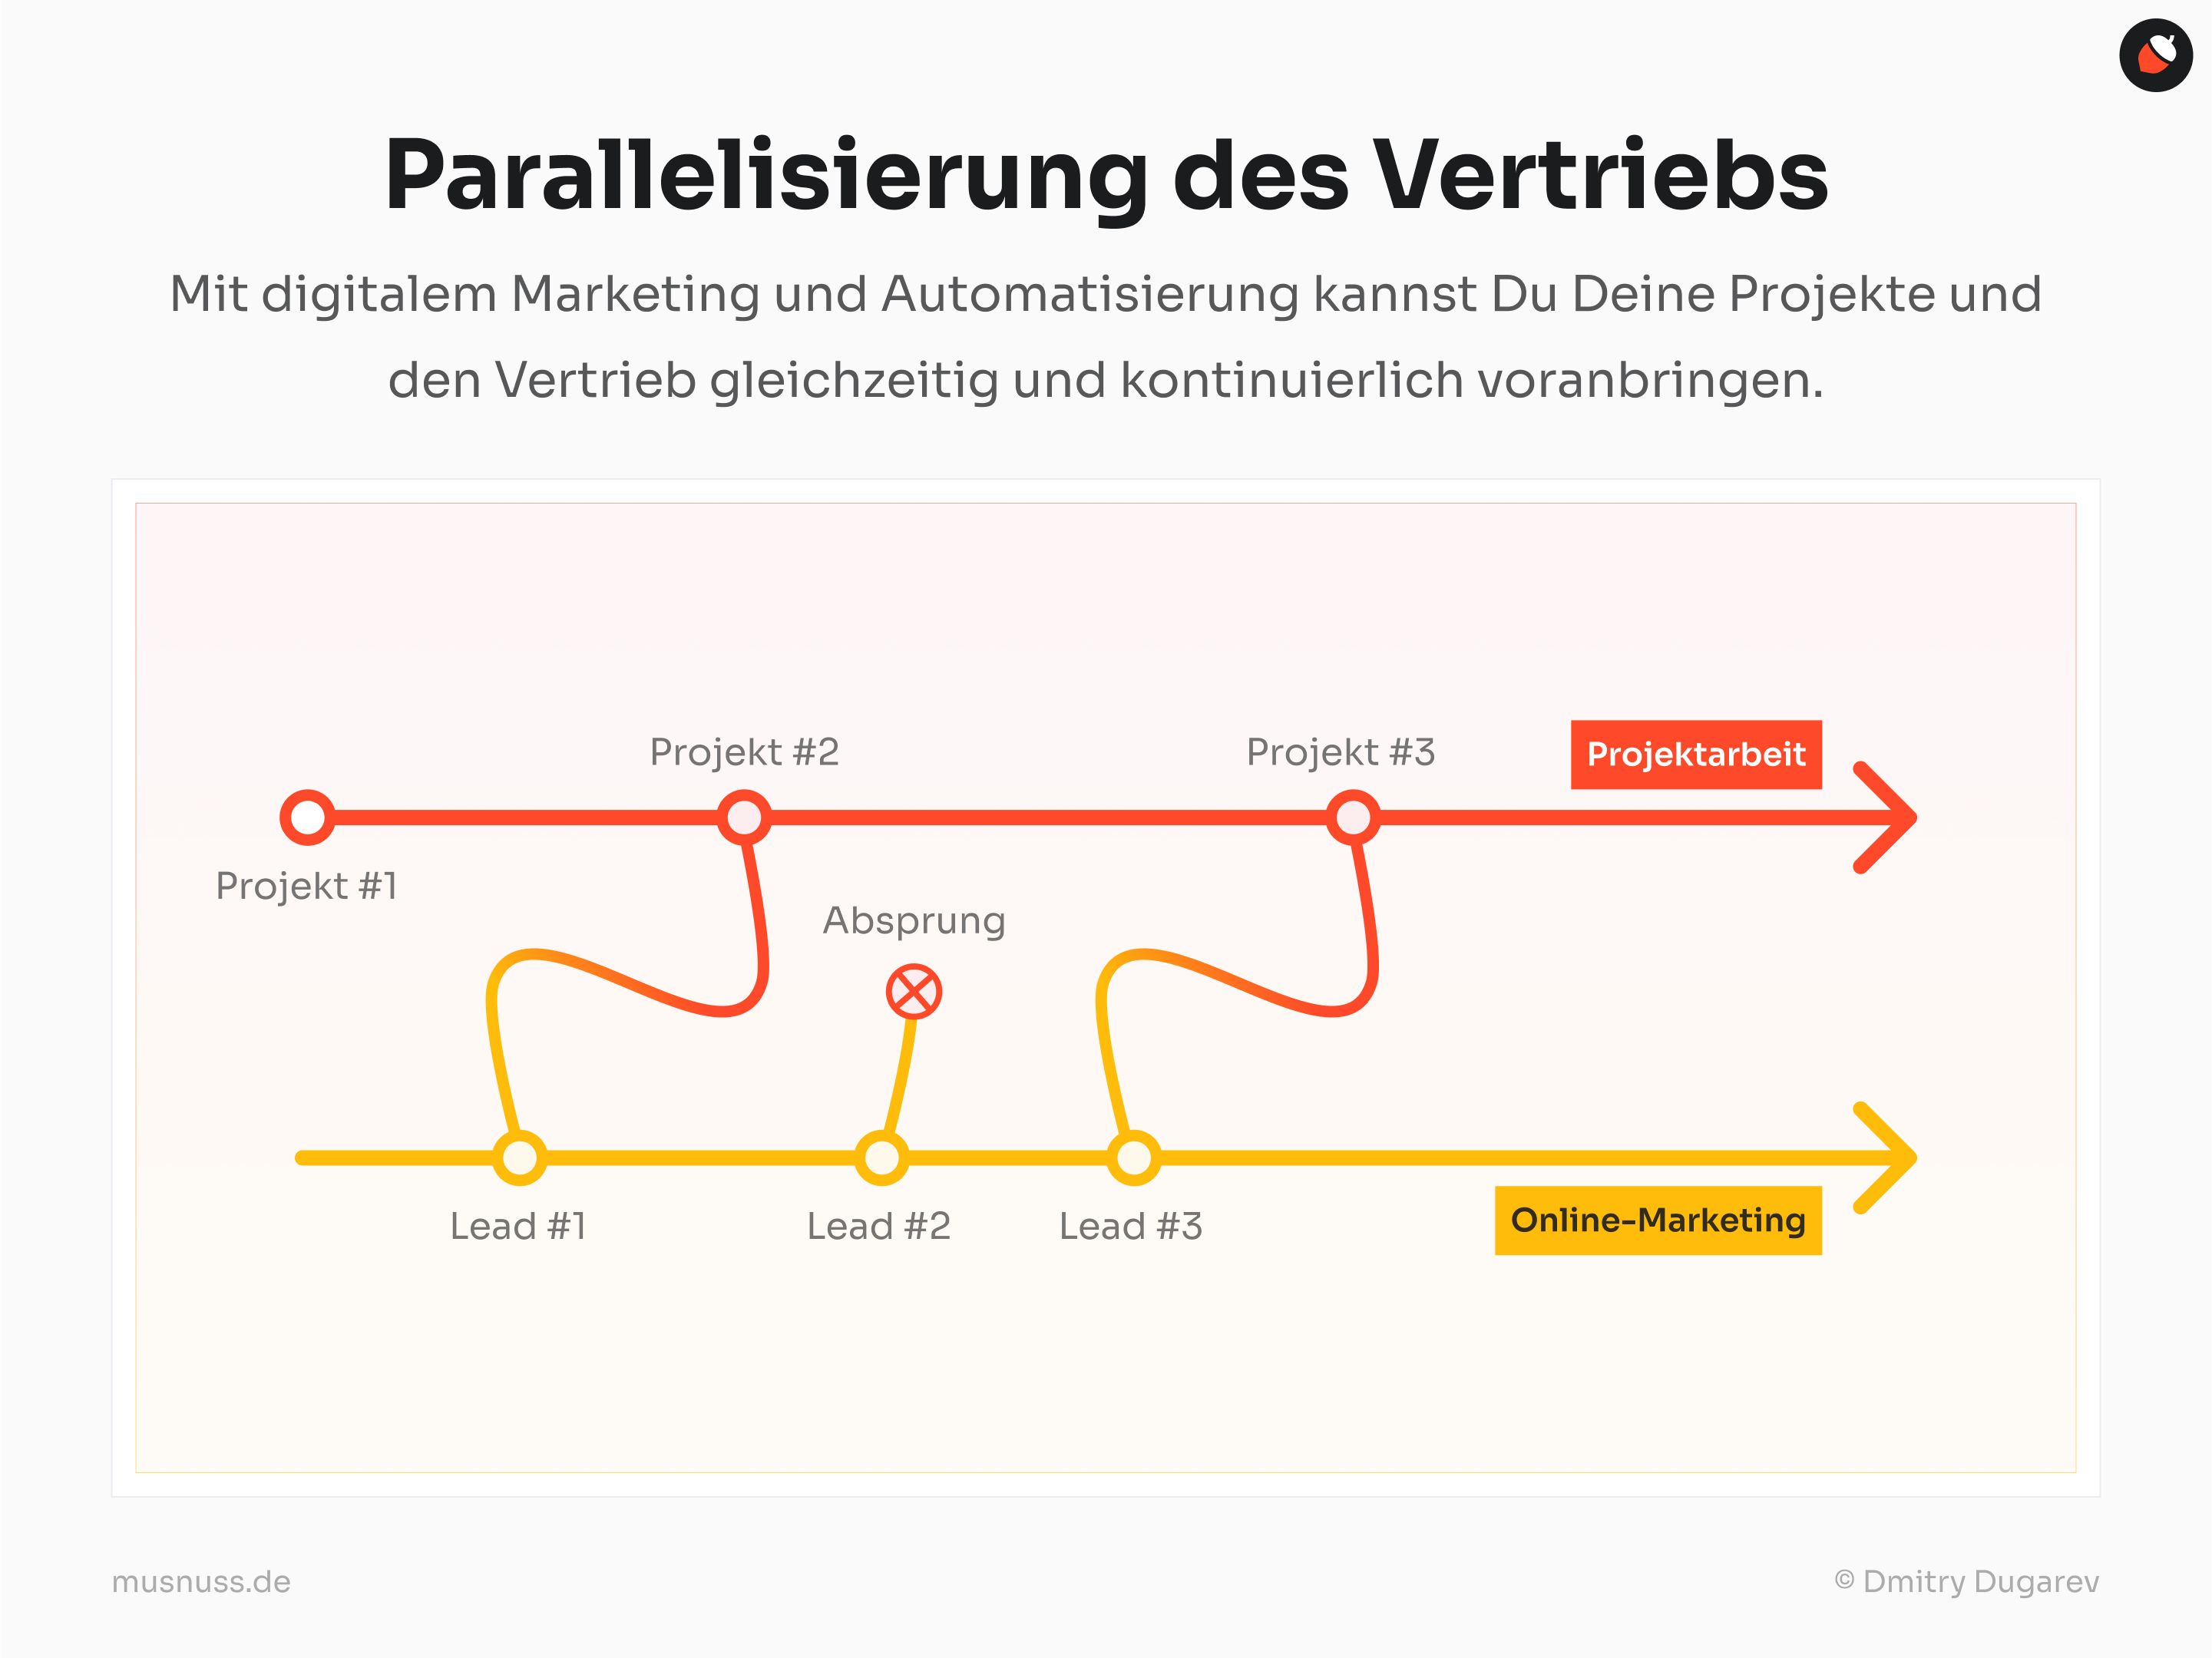 Diese Grafik zeigt die "Parallelisierung des Vertriebs" durch die Nutzung von digitalem Marketing und Automatisierung. Oben verläuft eine rote Linie, die die kontinuierliche Projektarbeit mit den Markierungen "Projekt #1", "Projekt #2", "Projekt #3" und "Absprung" darstellt. Unten verläuft eine gelbe Linie, die den Prozess der Online-Kundengewinnung mit den Markierungen "Lead #1", "Lead #2" und "Lead #3" zeigt. Die Linien symbolisieren, dass Projektarbeit und Marketing parallel und kontinuierlich vorangetrieben werden können.